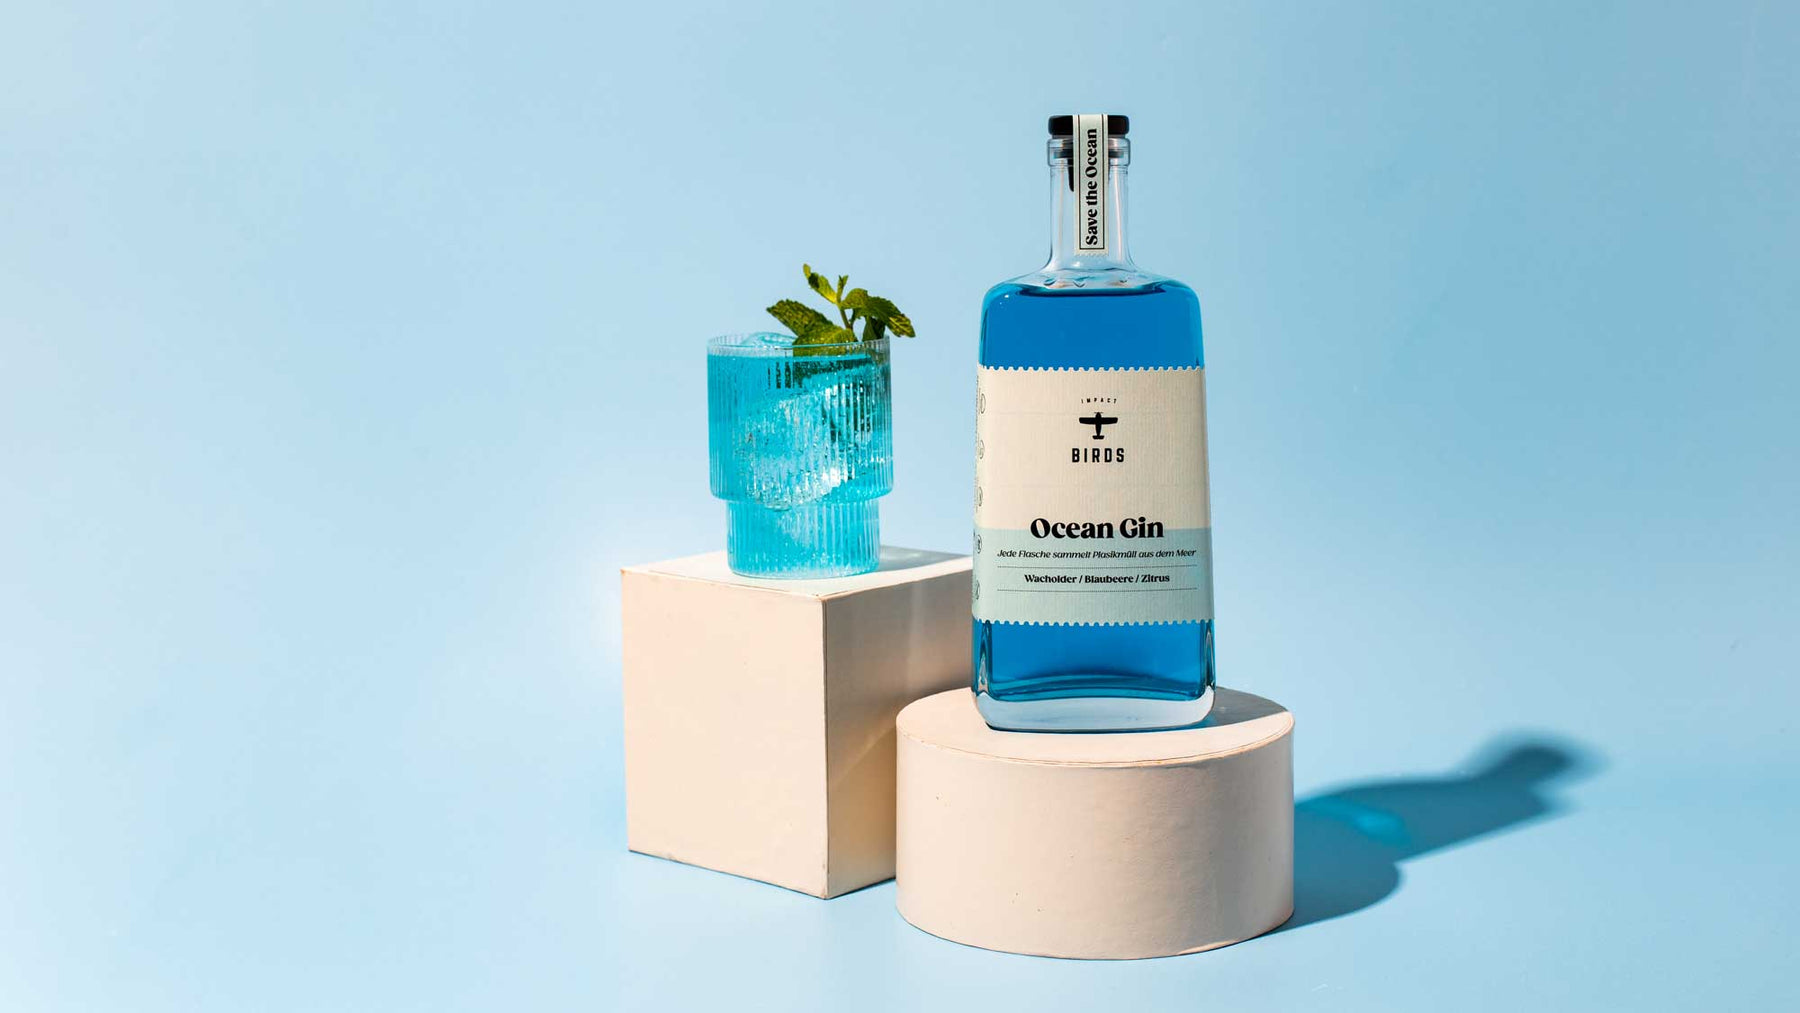 Unser Ocean Gin  im neuen Design erstrahlt durch die durchsichtige Flasche in einem strahlenden Blau, was ihn zum perfekten Gin für einen ozeanblauen Gin Tonic macht.